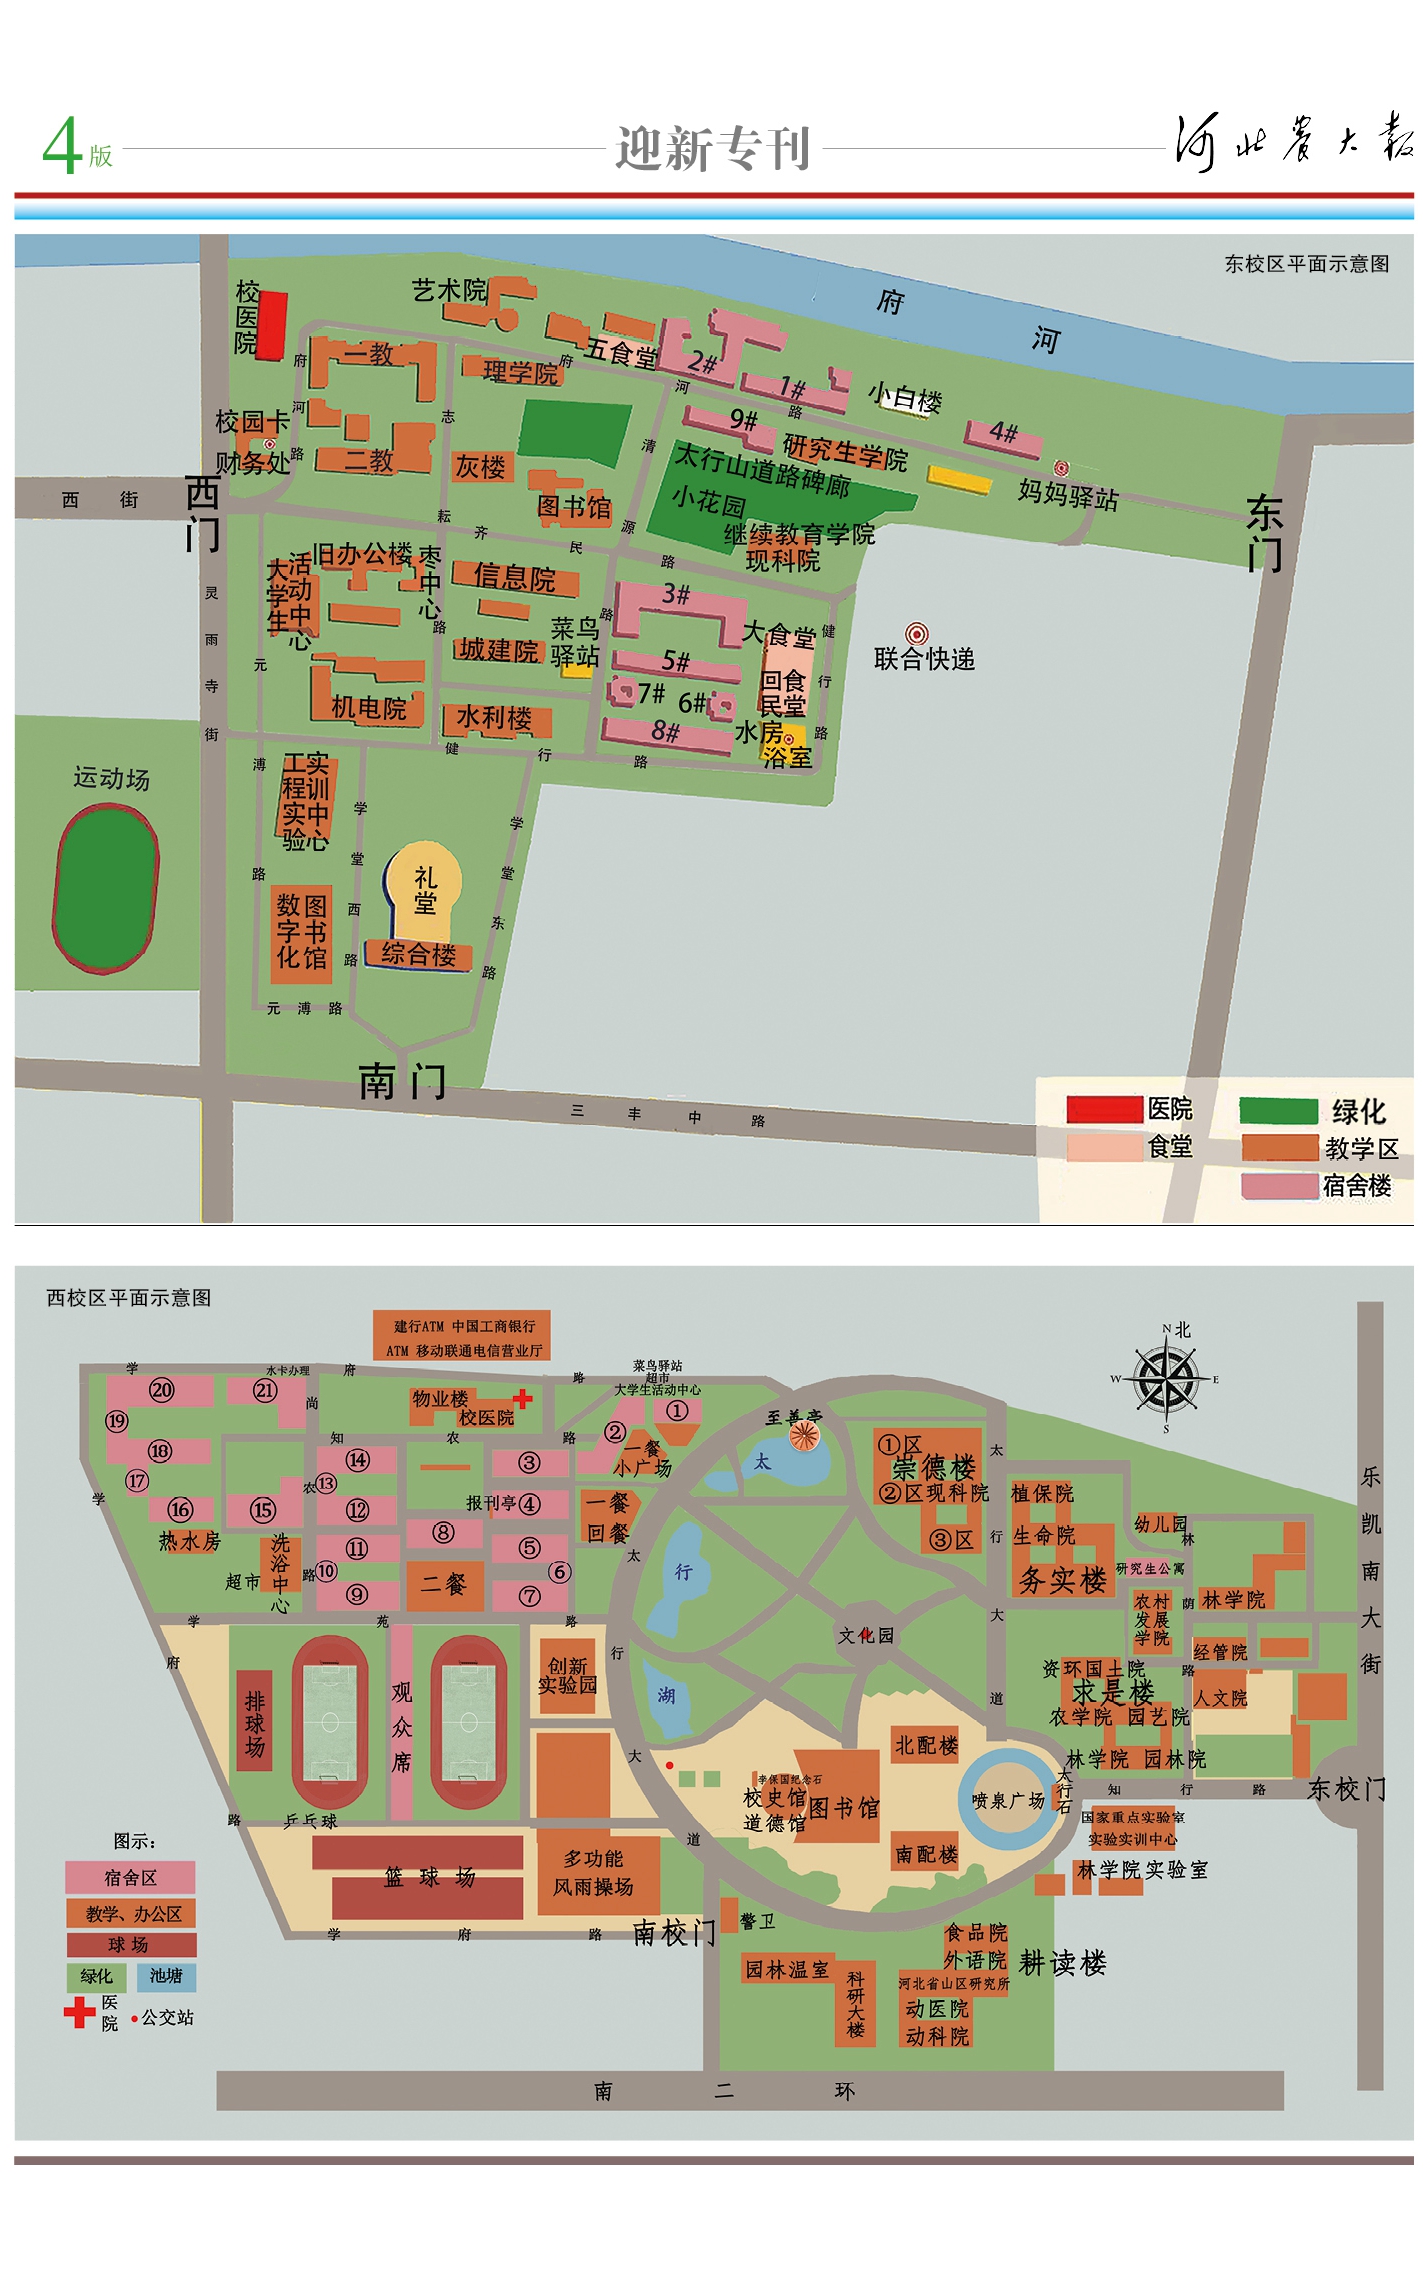 中国农业大学新闻网 媒体农大 别样校园图